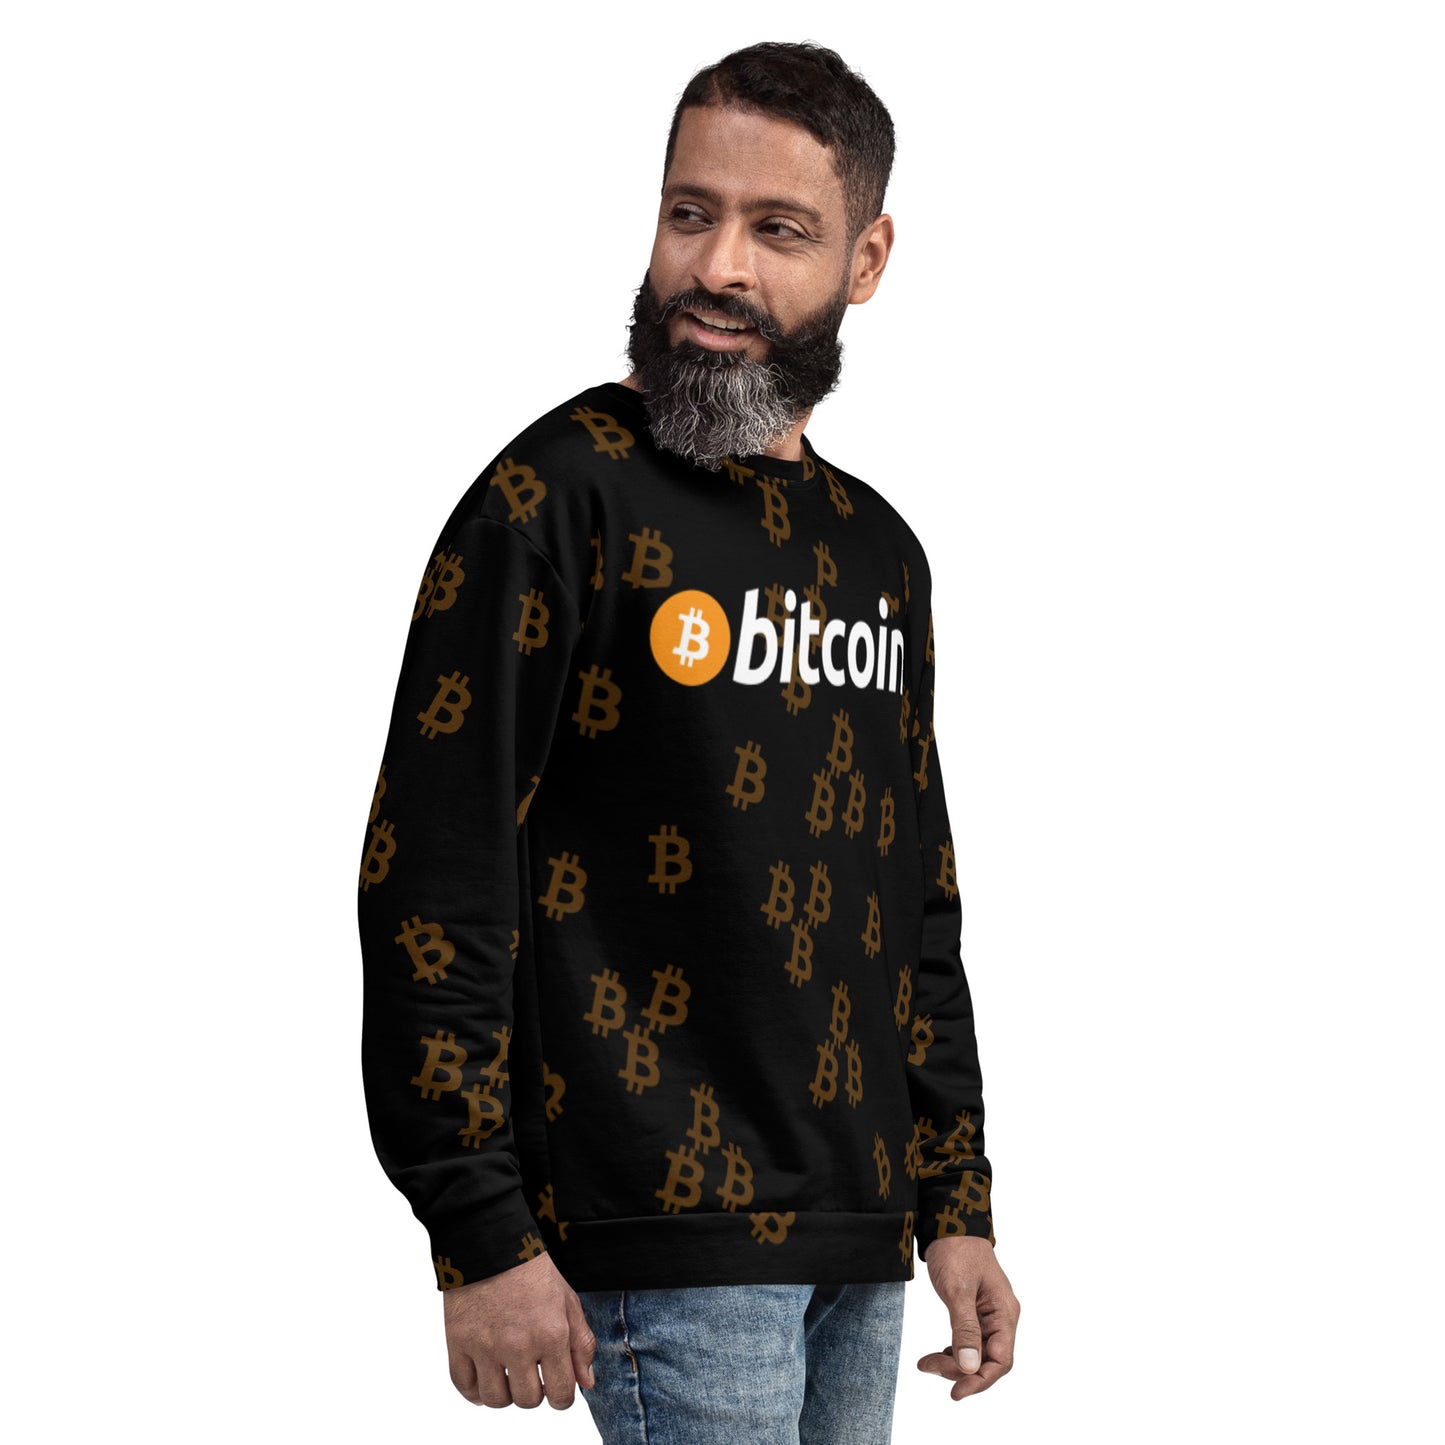 Bitcoin Urban Sweatshirt